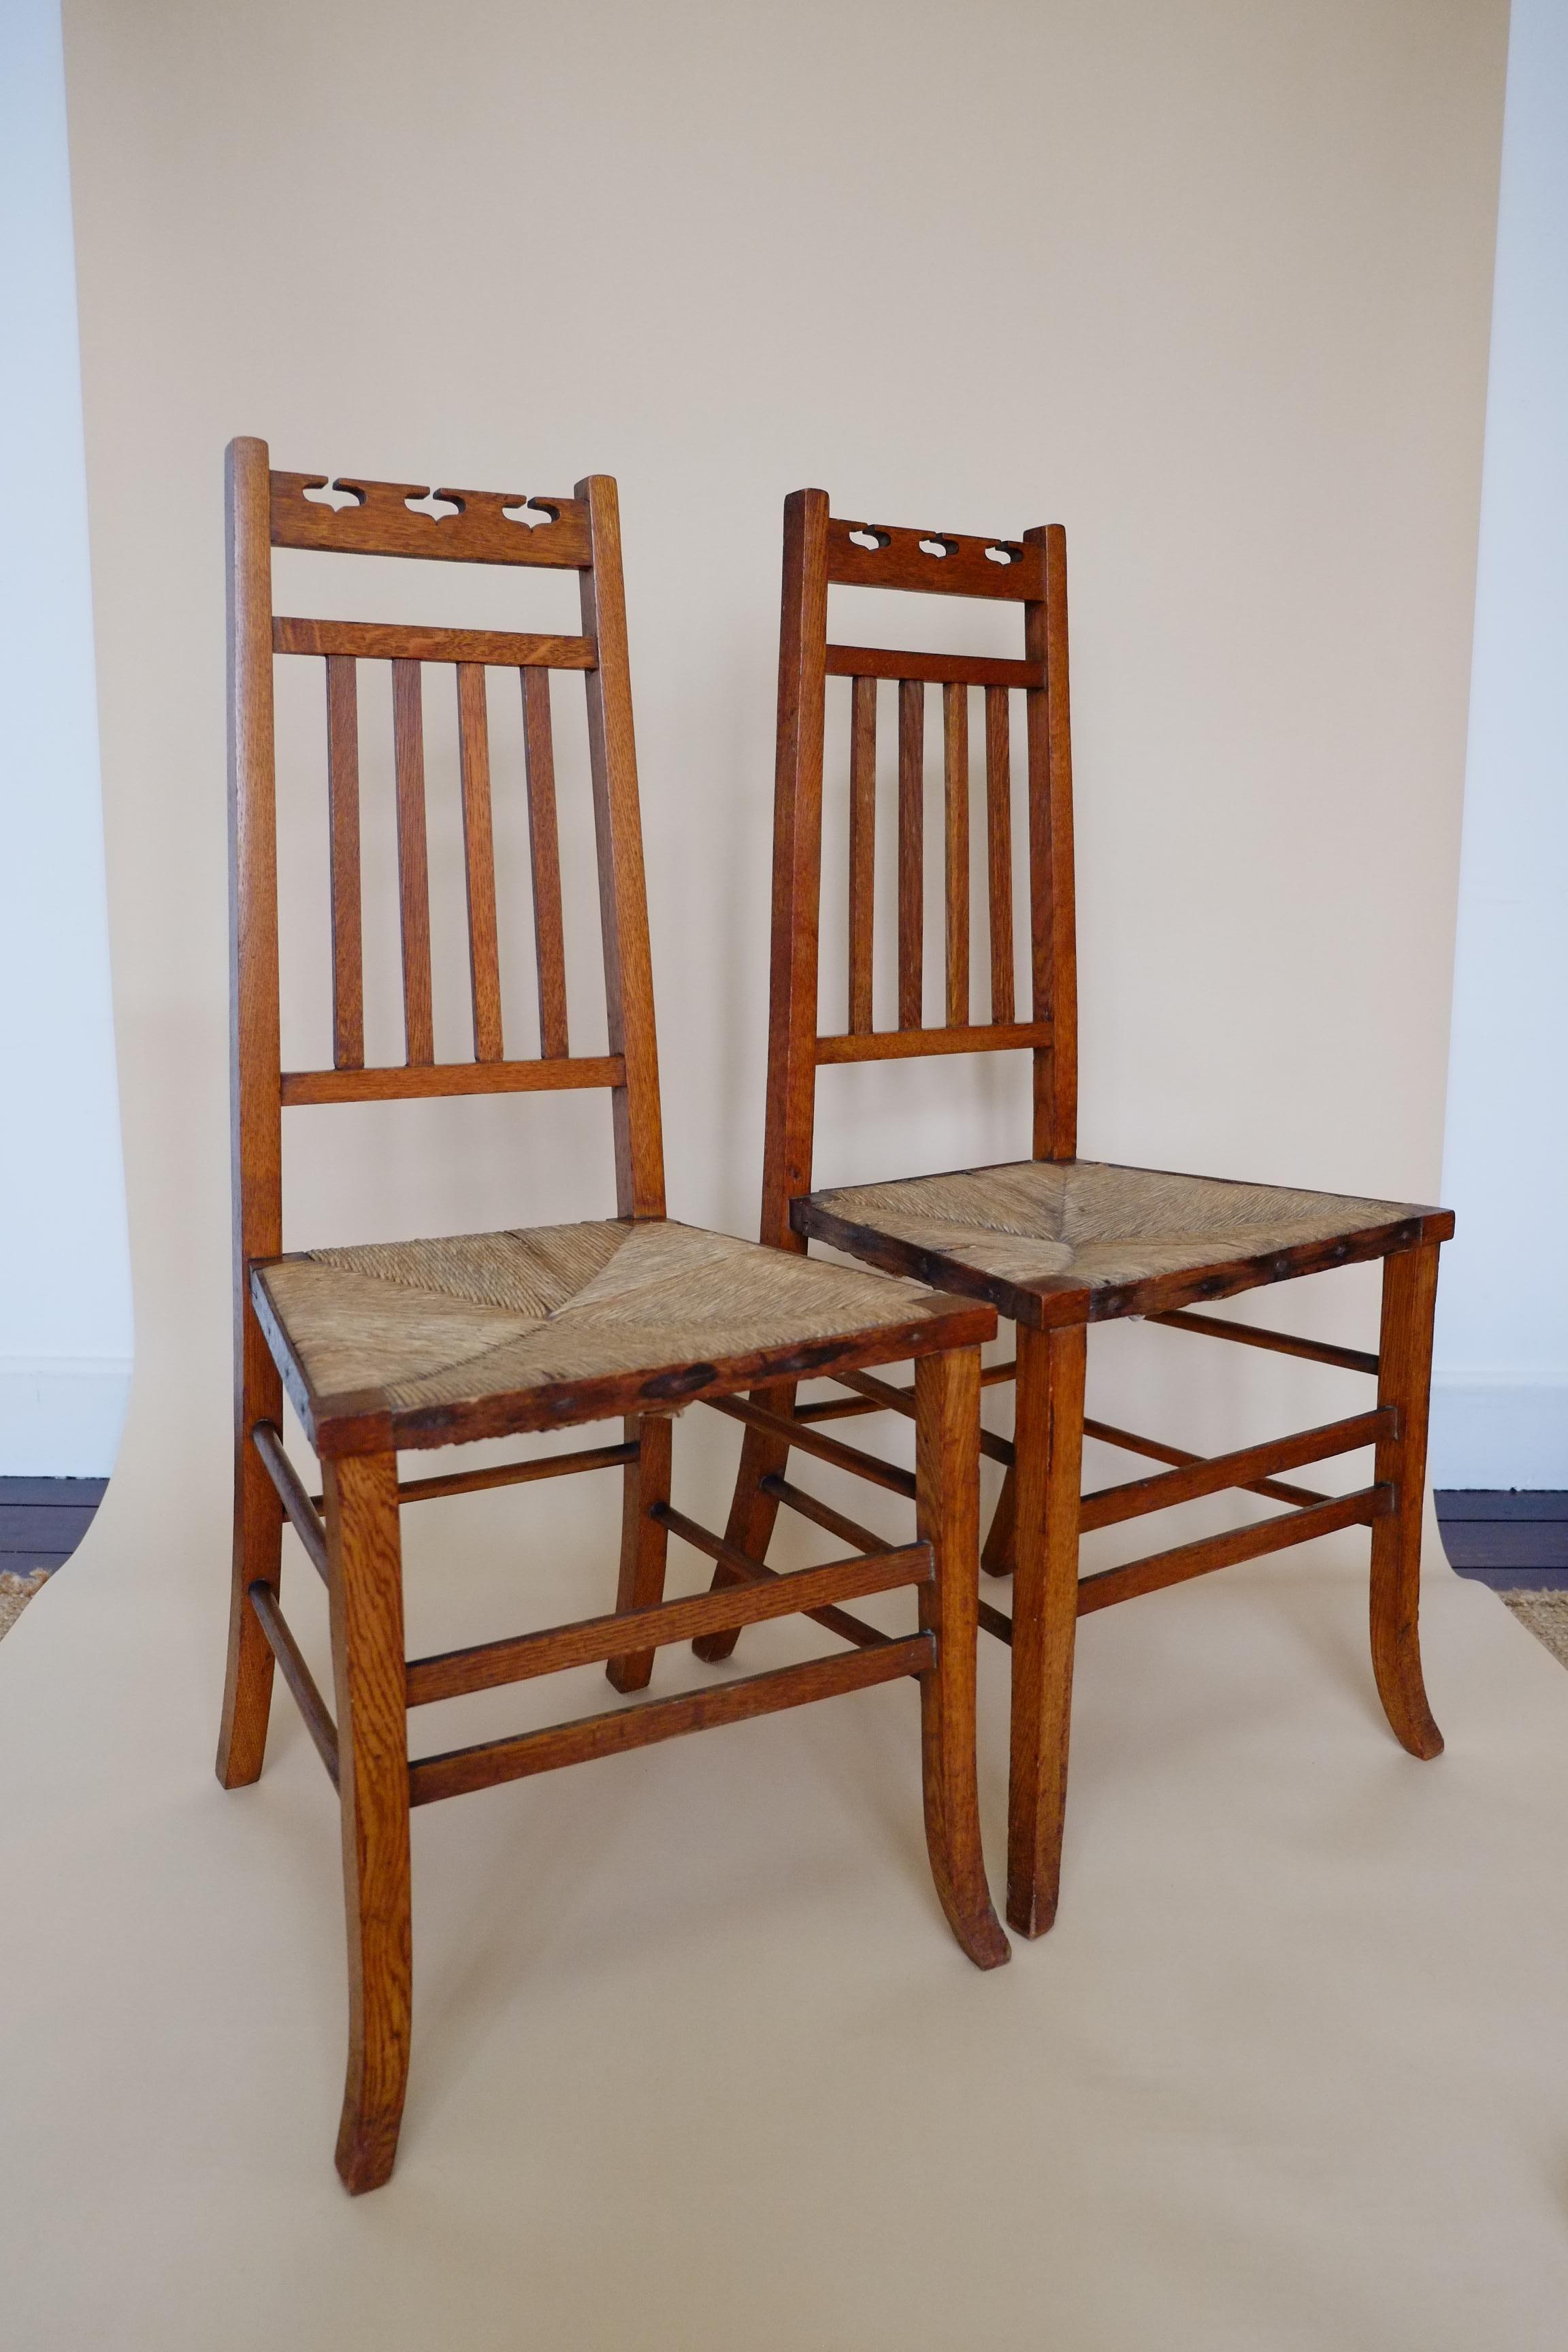 Une superbe paire de chaises d'appoint Arts & Crafts du début des années 1900. Attribué à E A Taylor pour Wylie & Lockhead. Fabriqué en Écosse. Les chaises ont une structure des plus élégantes, avec des dossiers effilés, une assise anguleuse et